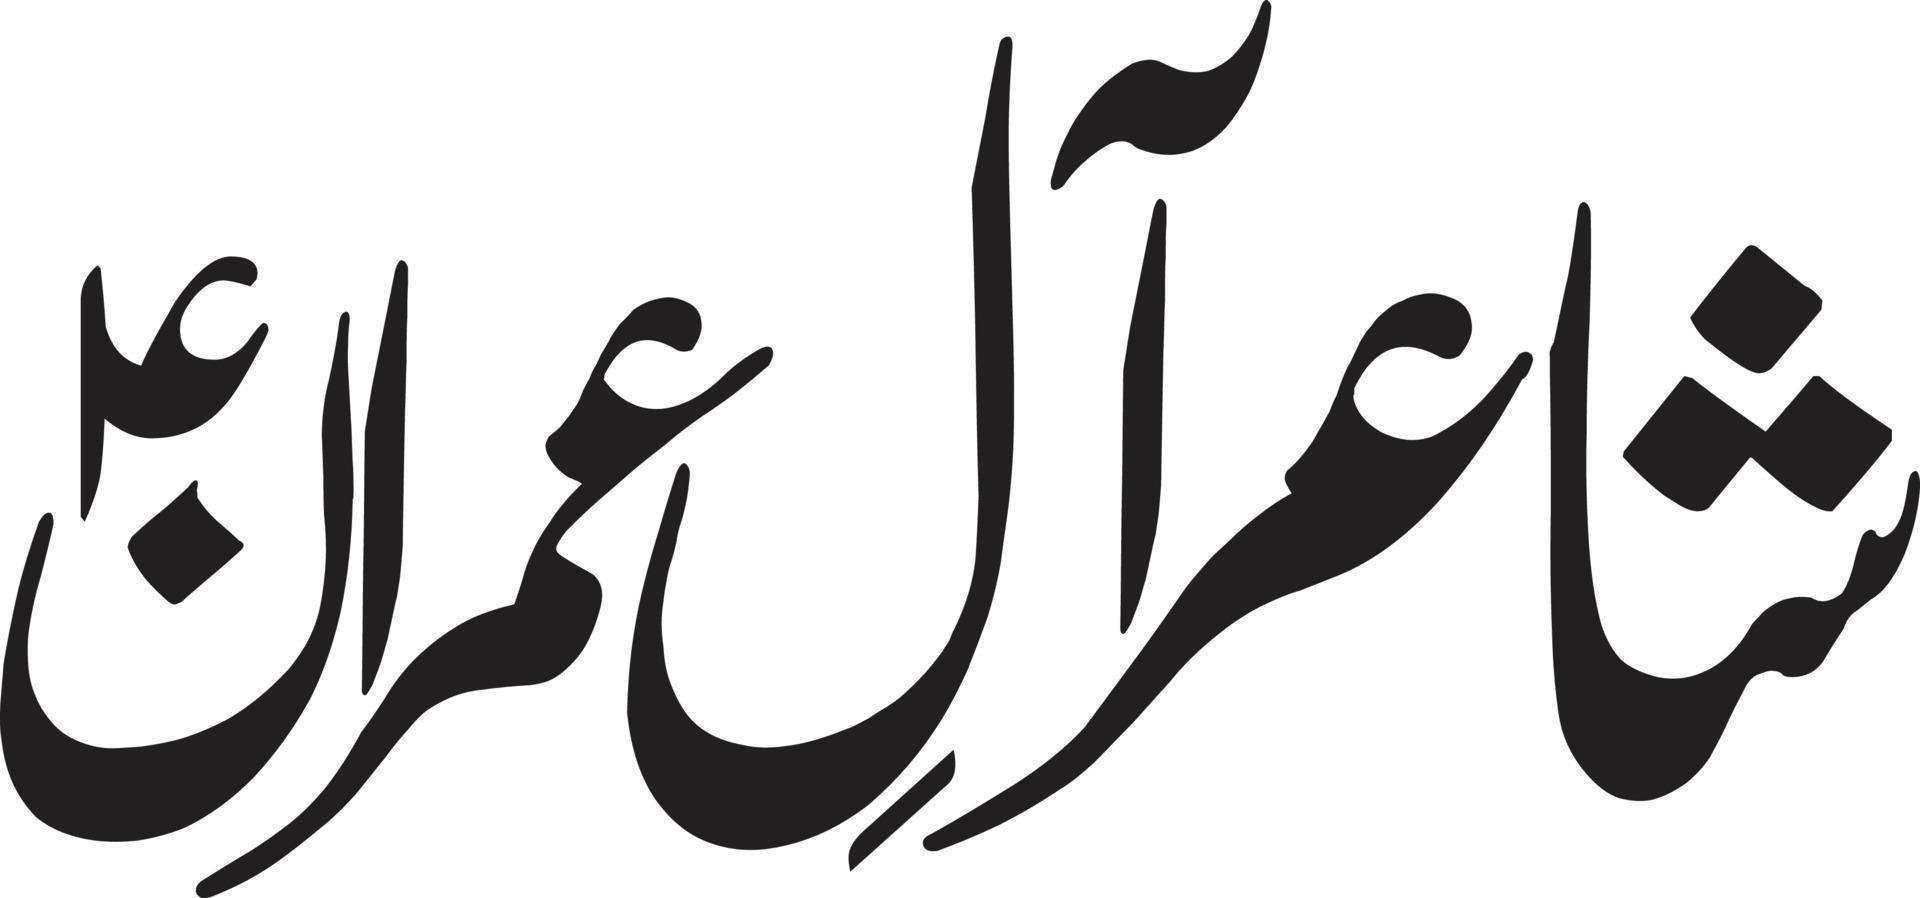 vetor livre de caligrafia árabe islâmica do título de shaer al imran